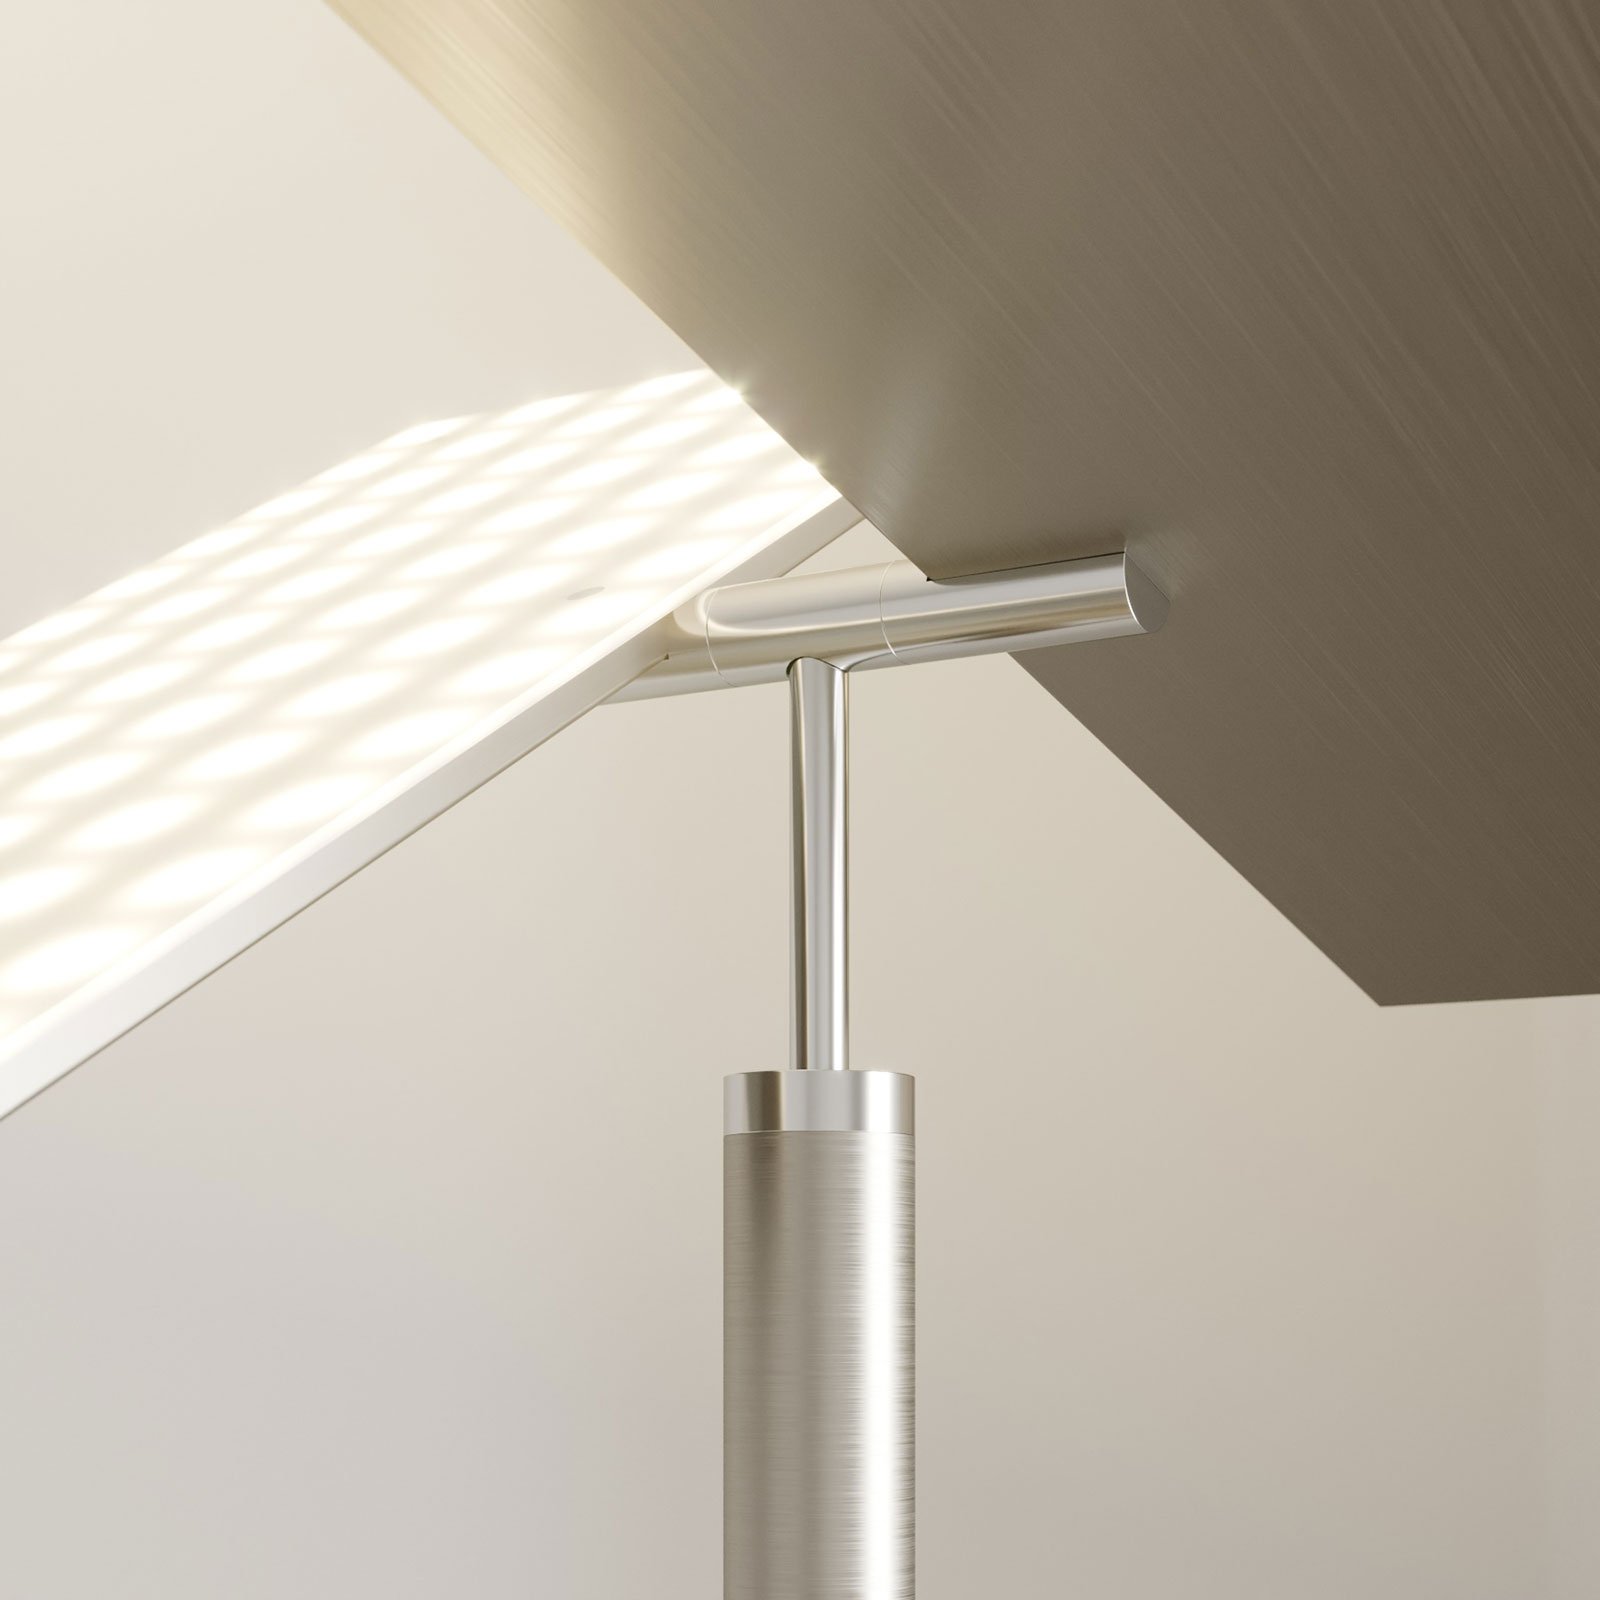 Lucande LED uplighter vloerlamp Parthena, nikkel